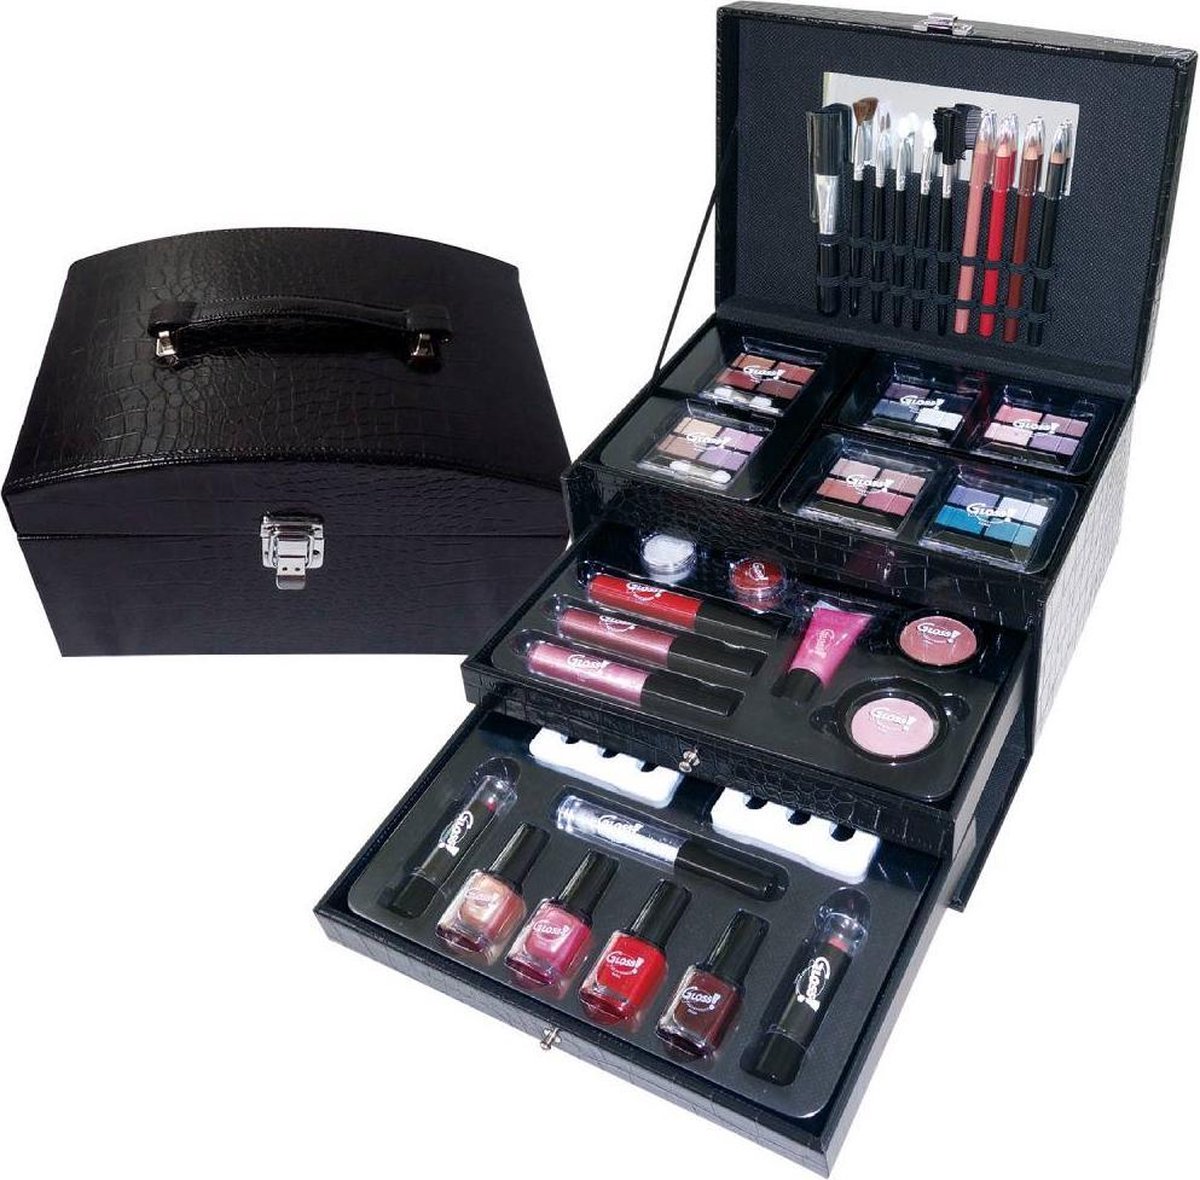 Ontwaken George Bernard stam Complete make-up koffer - beautycase - cosmetica - make-up koffer 57-delig  - make-up -... | bol.com